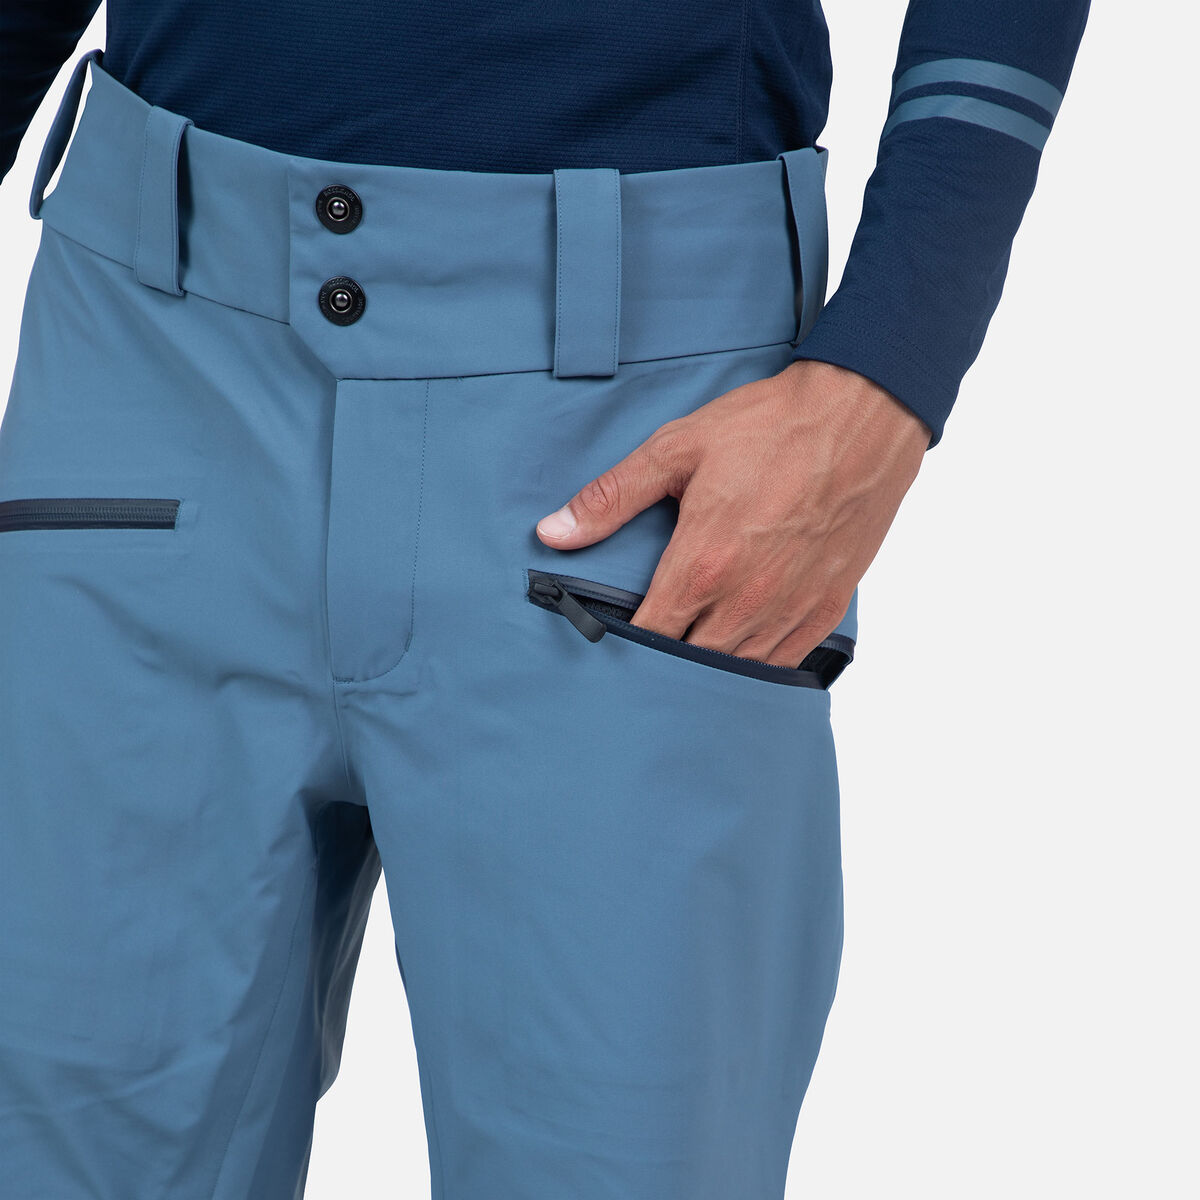 Rossignol Men's Evader Ski Pants blue